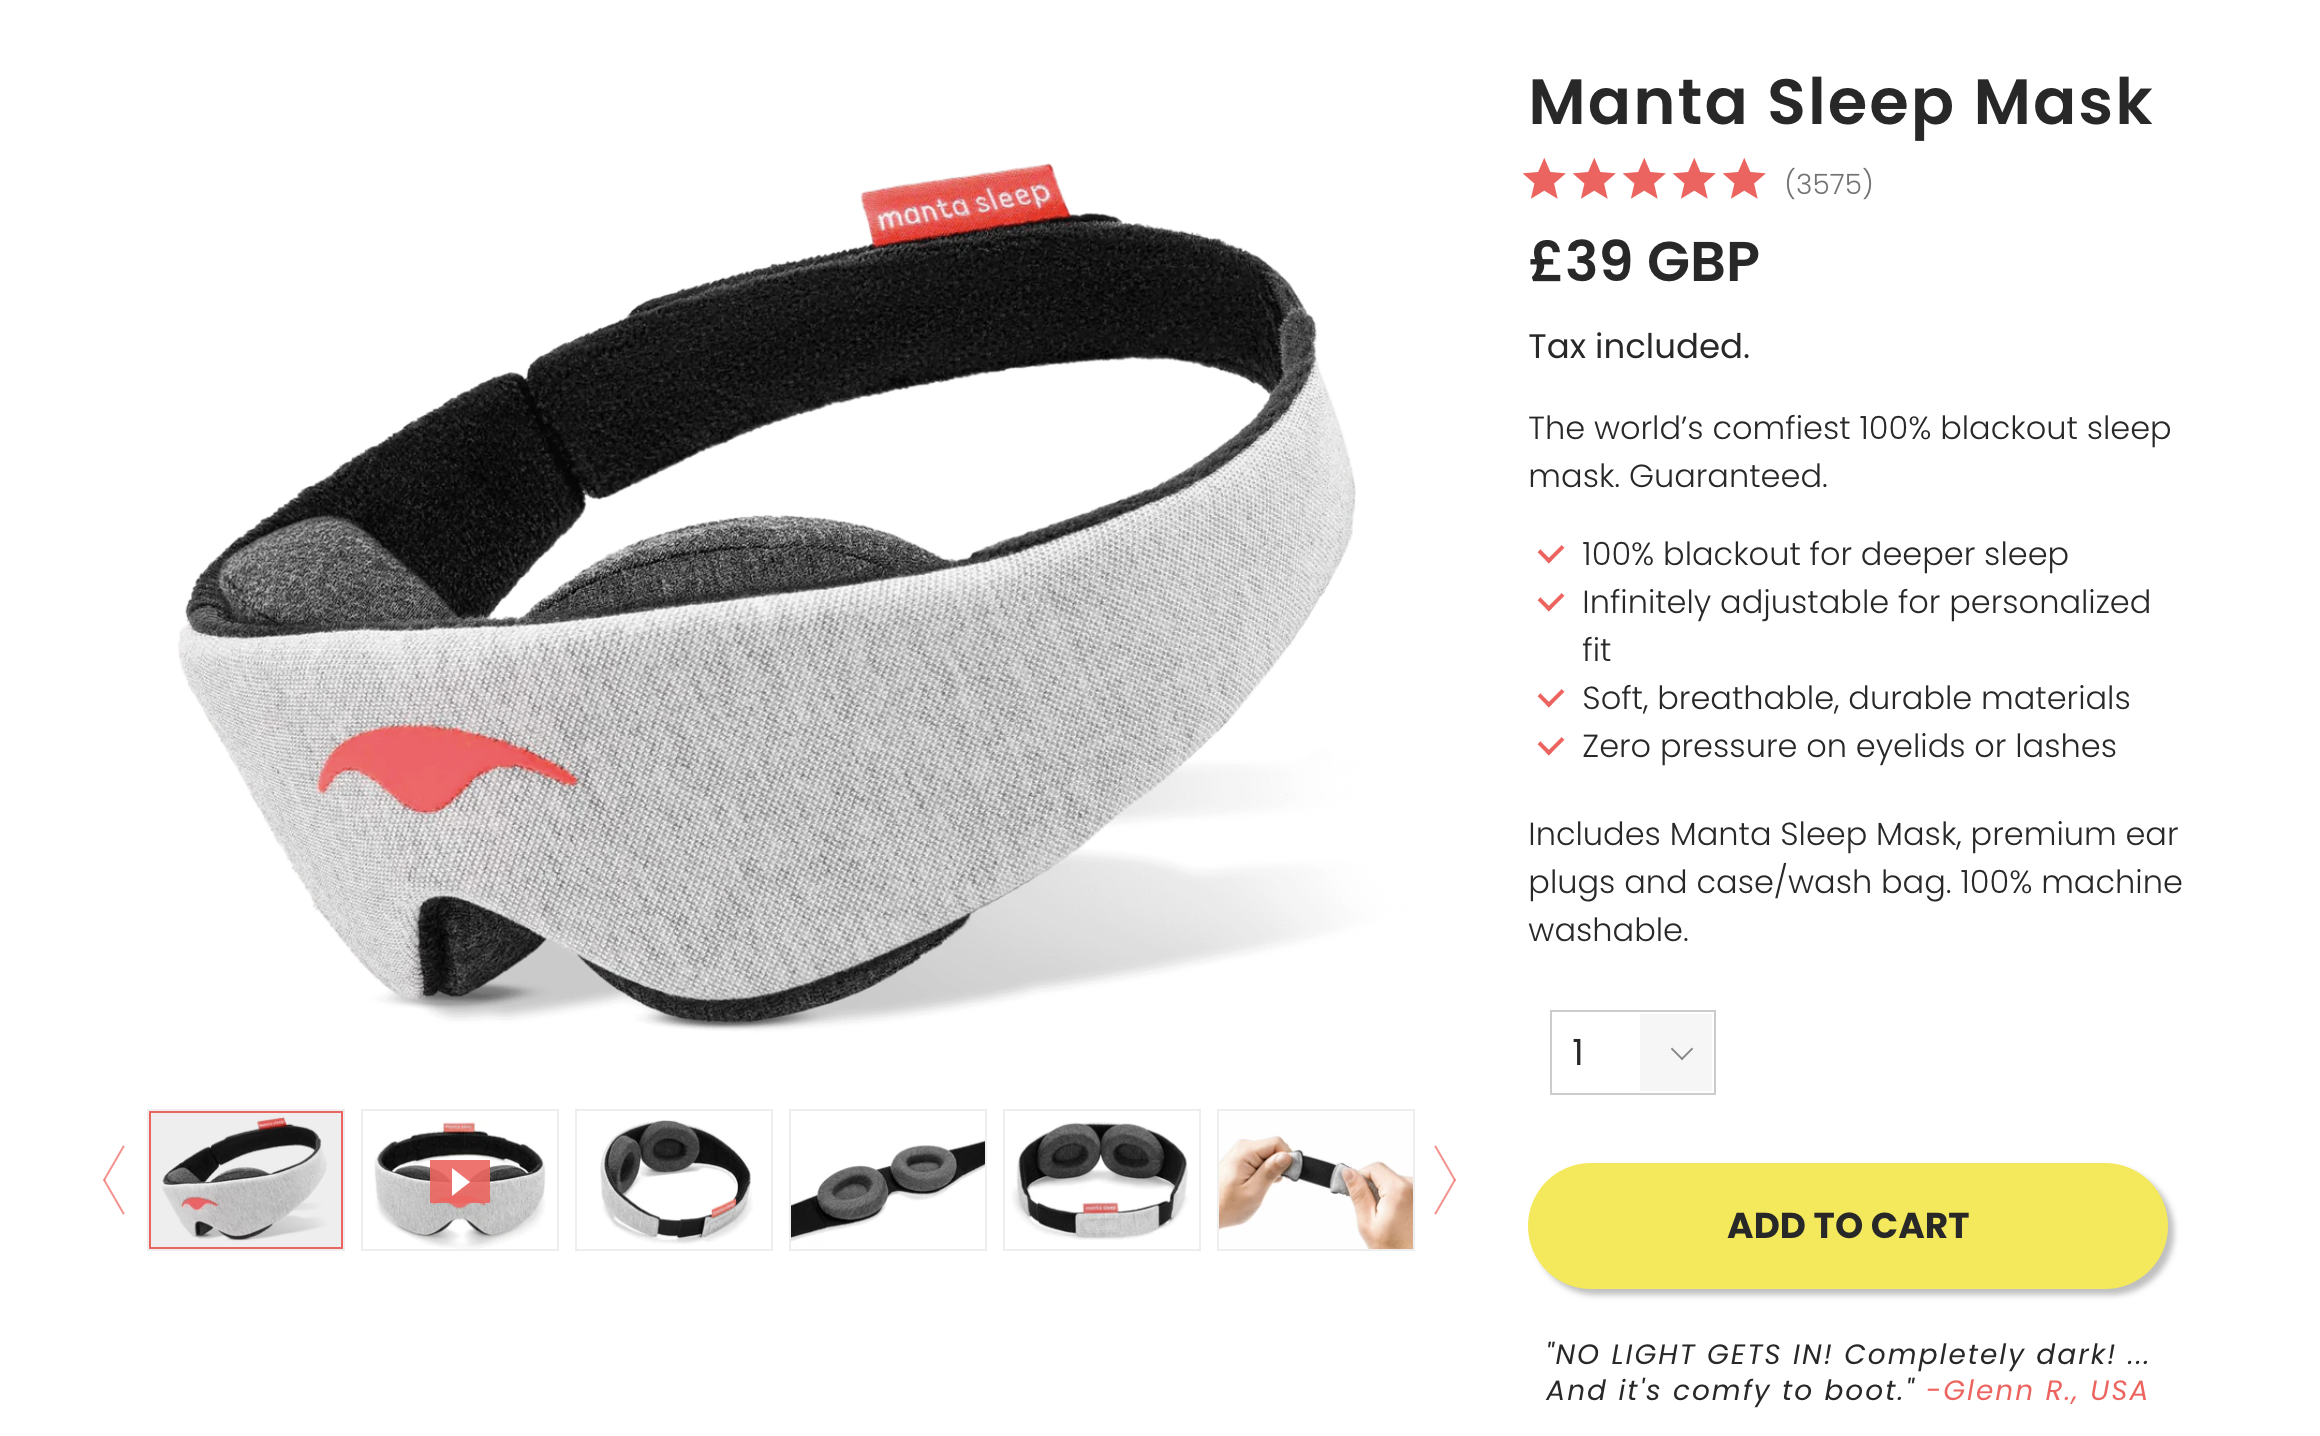 manta sleep mask conversion rate increase